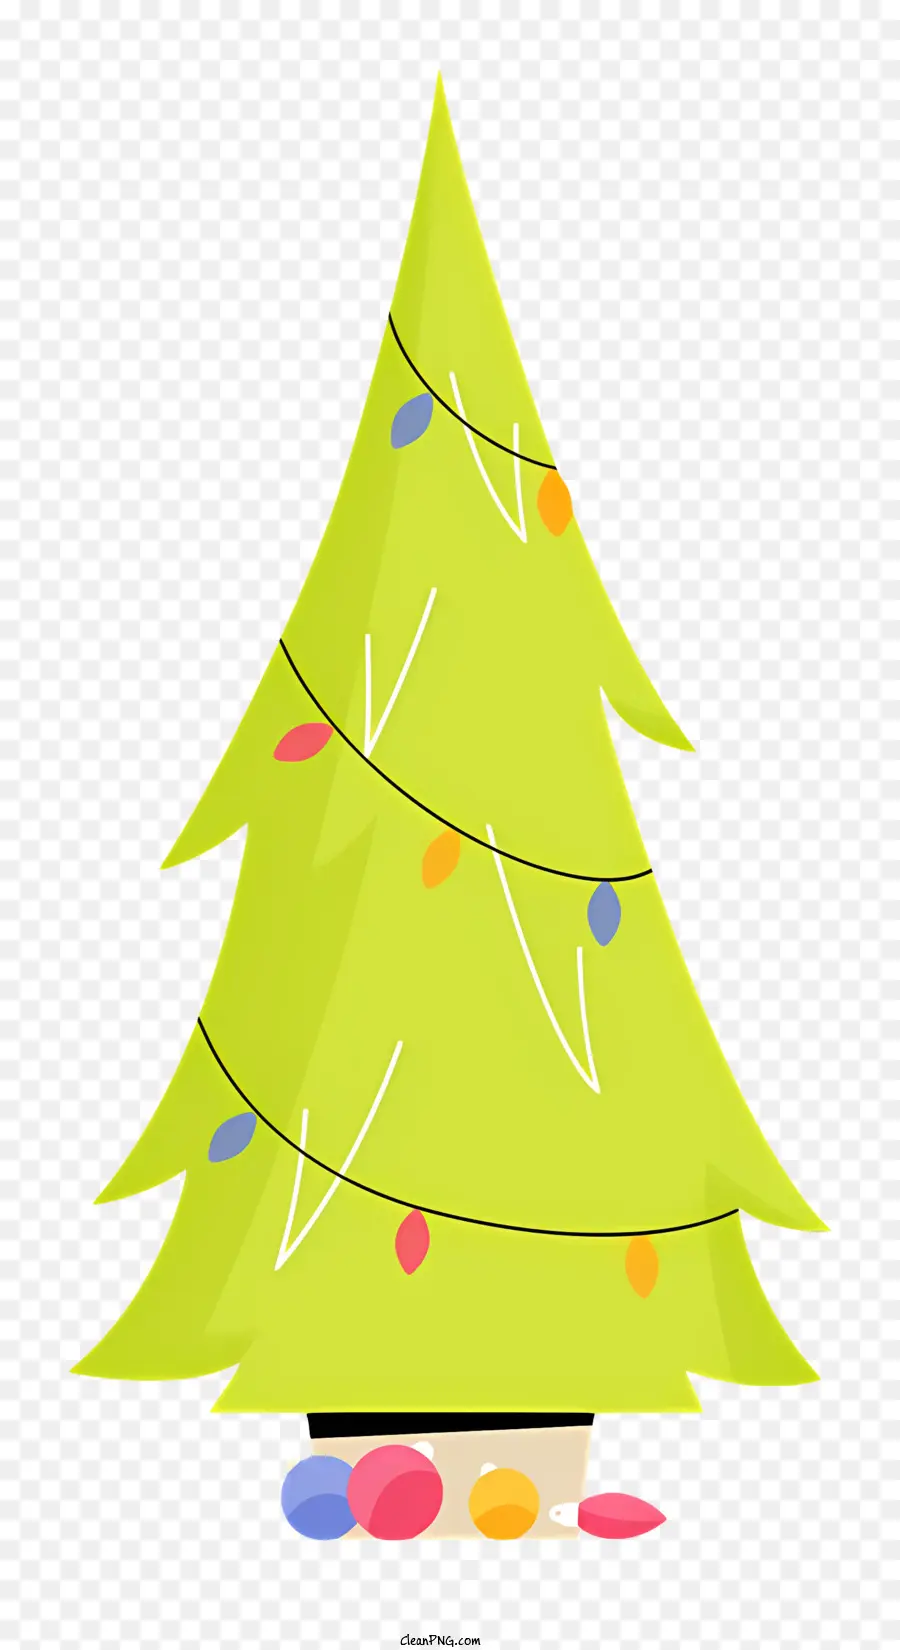 albero di natale - Albero di Natale di carta cilindrica con luci colorate